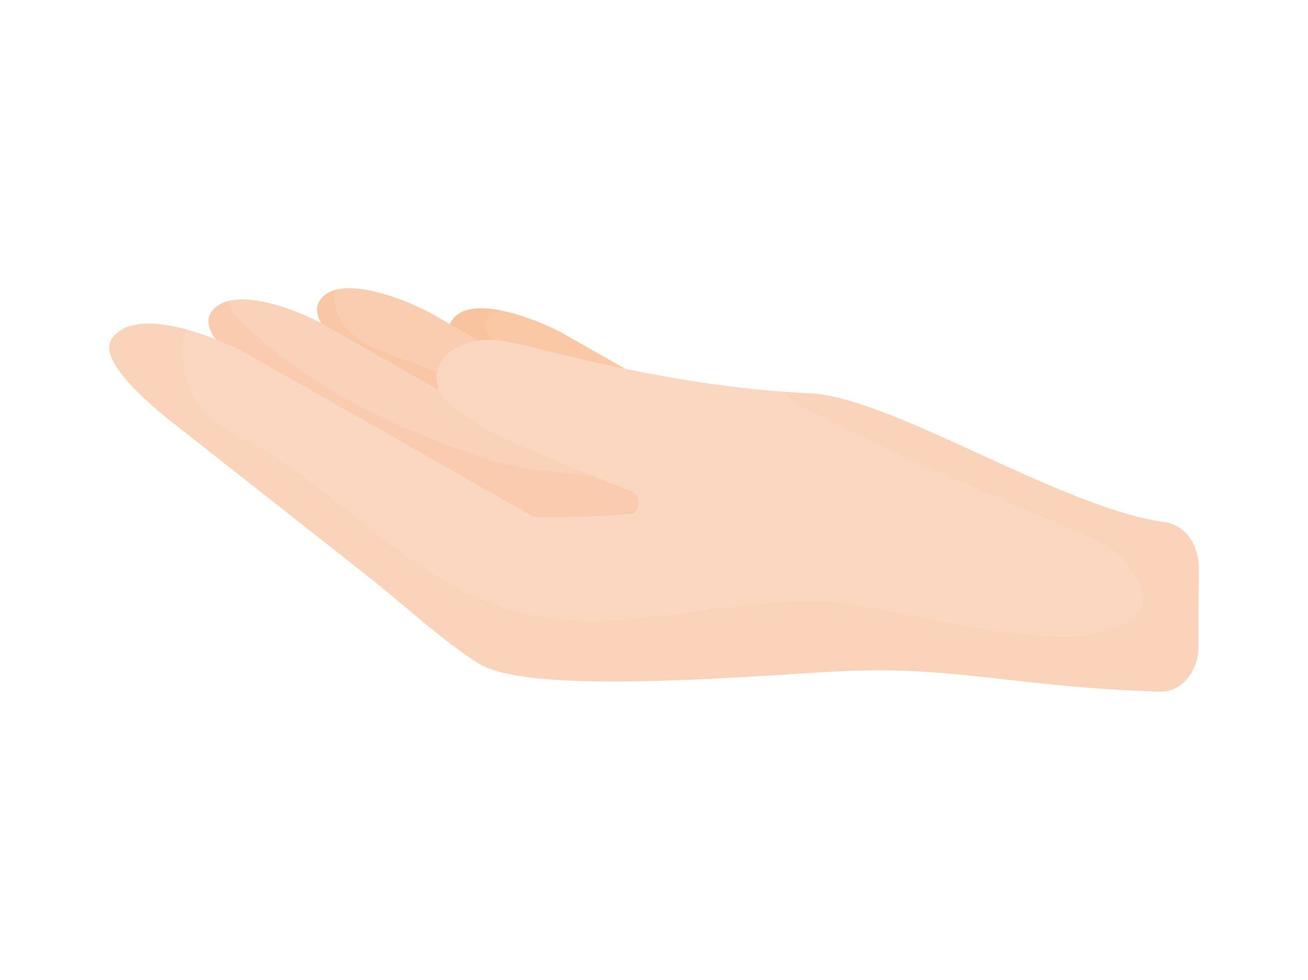 illustration de la main humaine vecteur